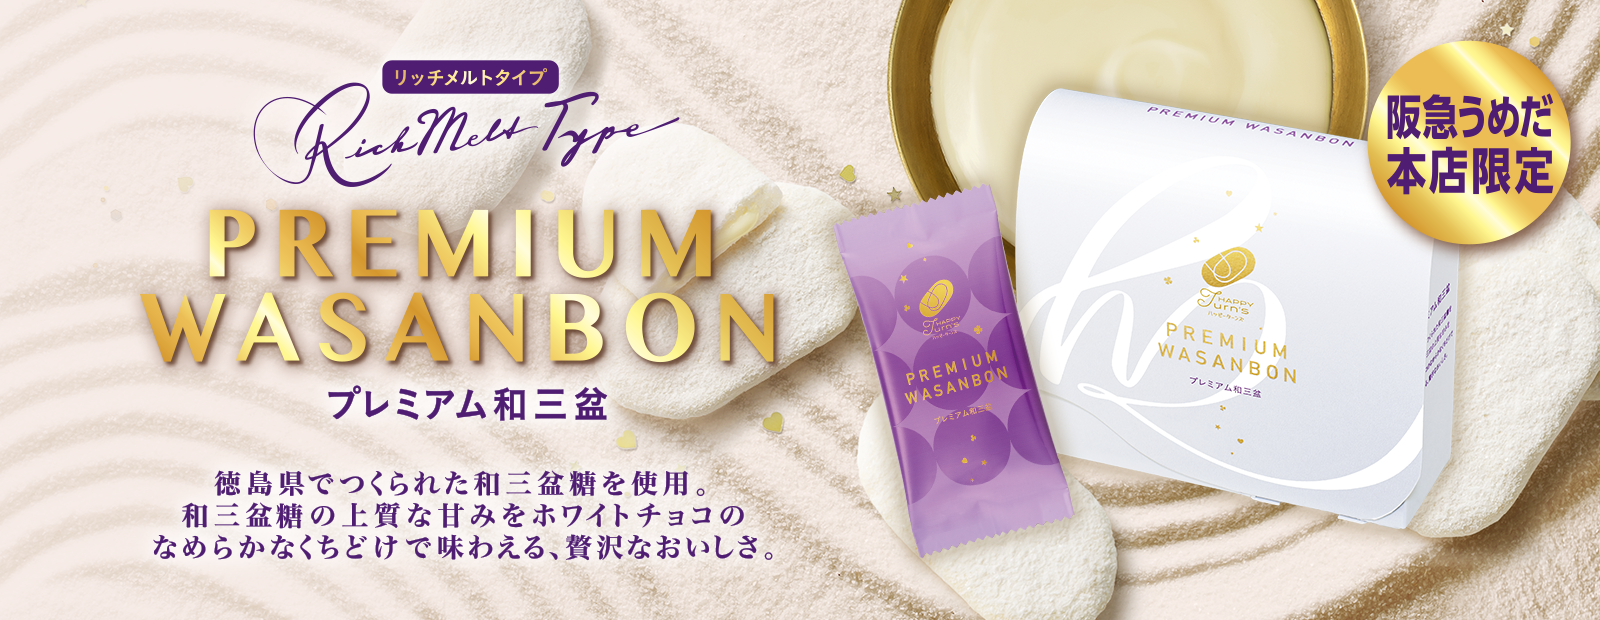 プレミアム和三盆 徳島県でつくられた和三盆糖を使用。和三盆糖の上品な甘みをホワイトチョコのなめらかな口溶けで味わえる、贅沢な美味しさ。